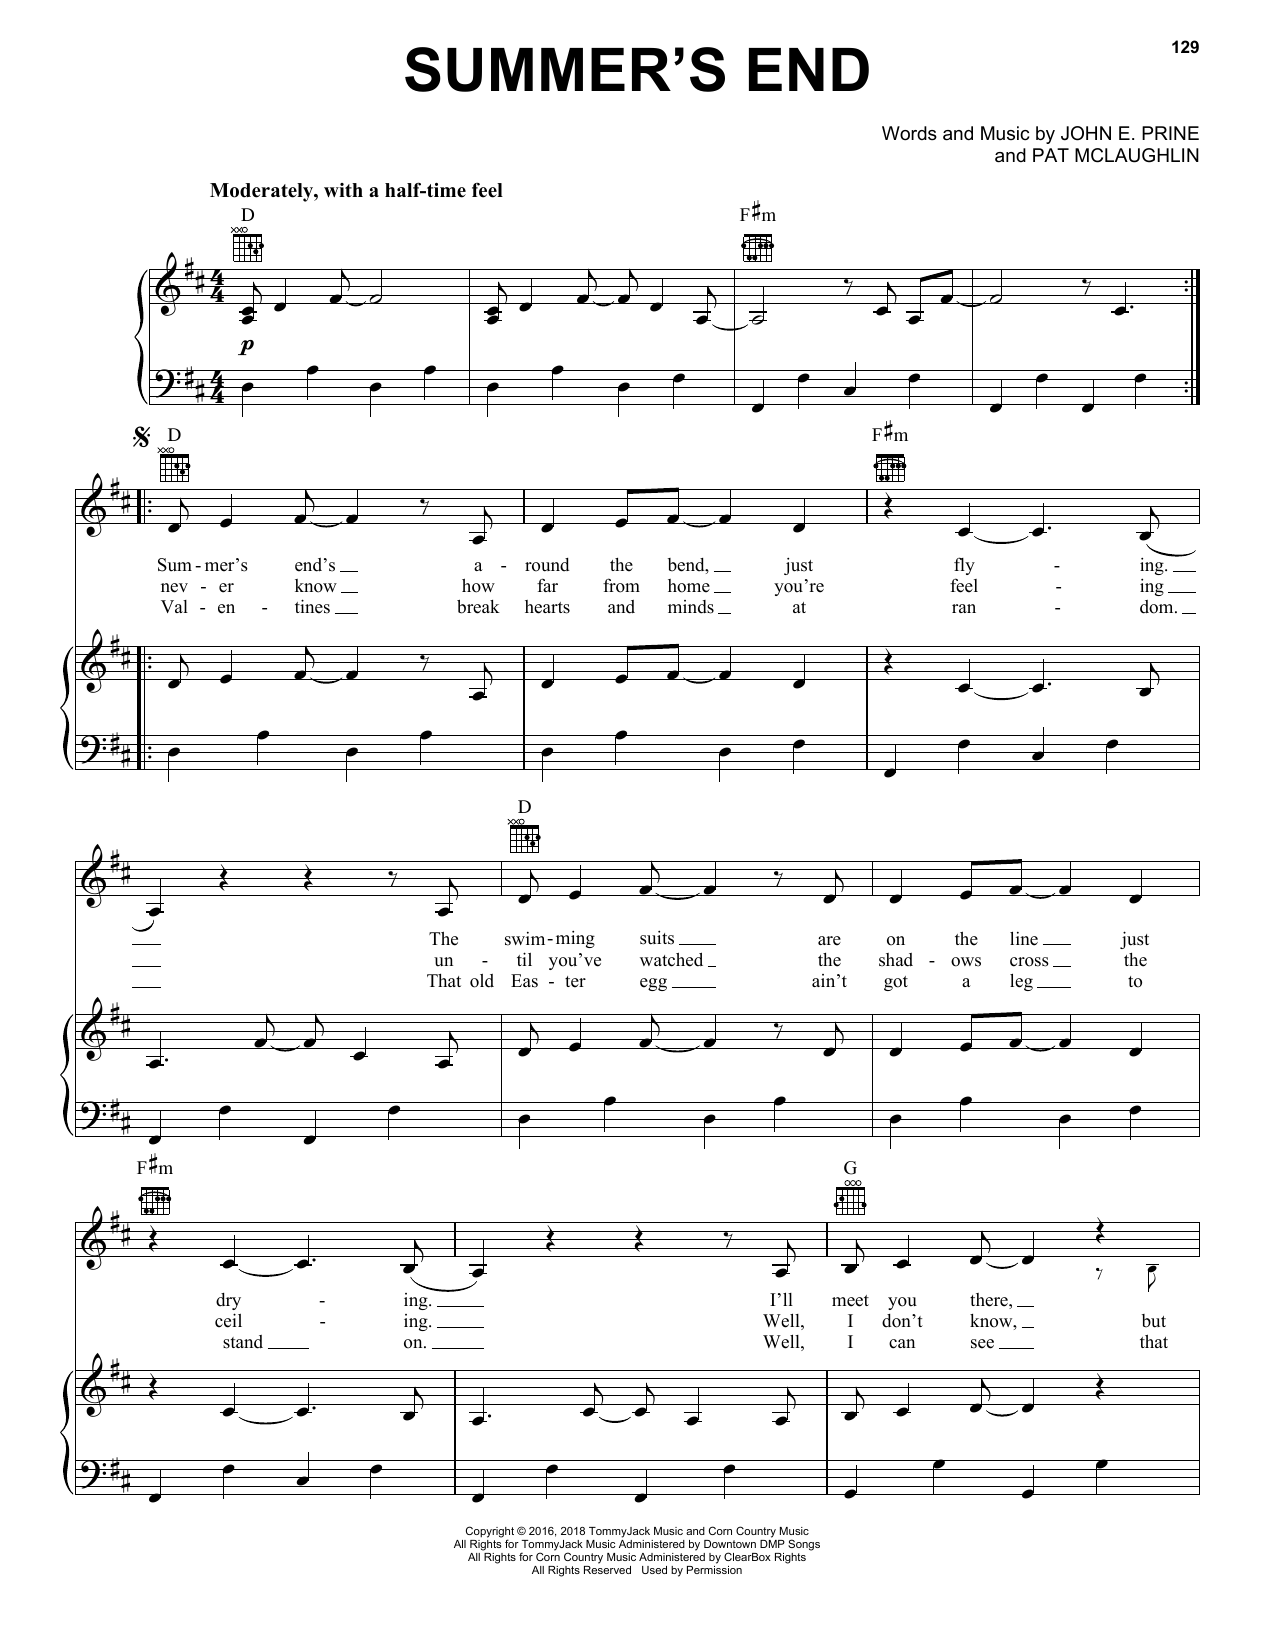 John Prine Summer's End Sheet Music Notes & Chords for Ukulele - Download or Print PDF